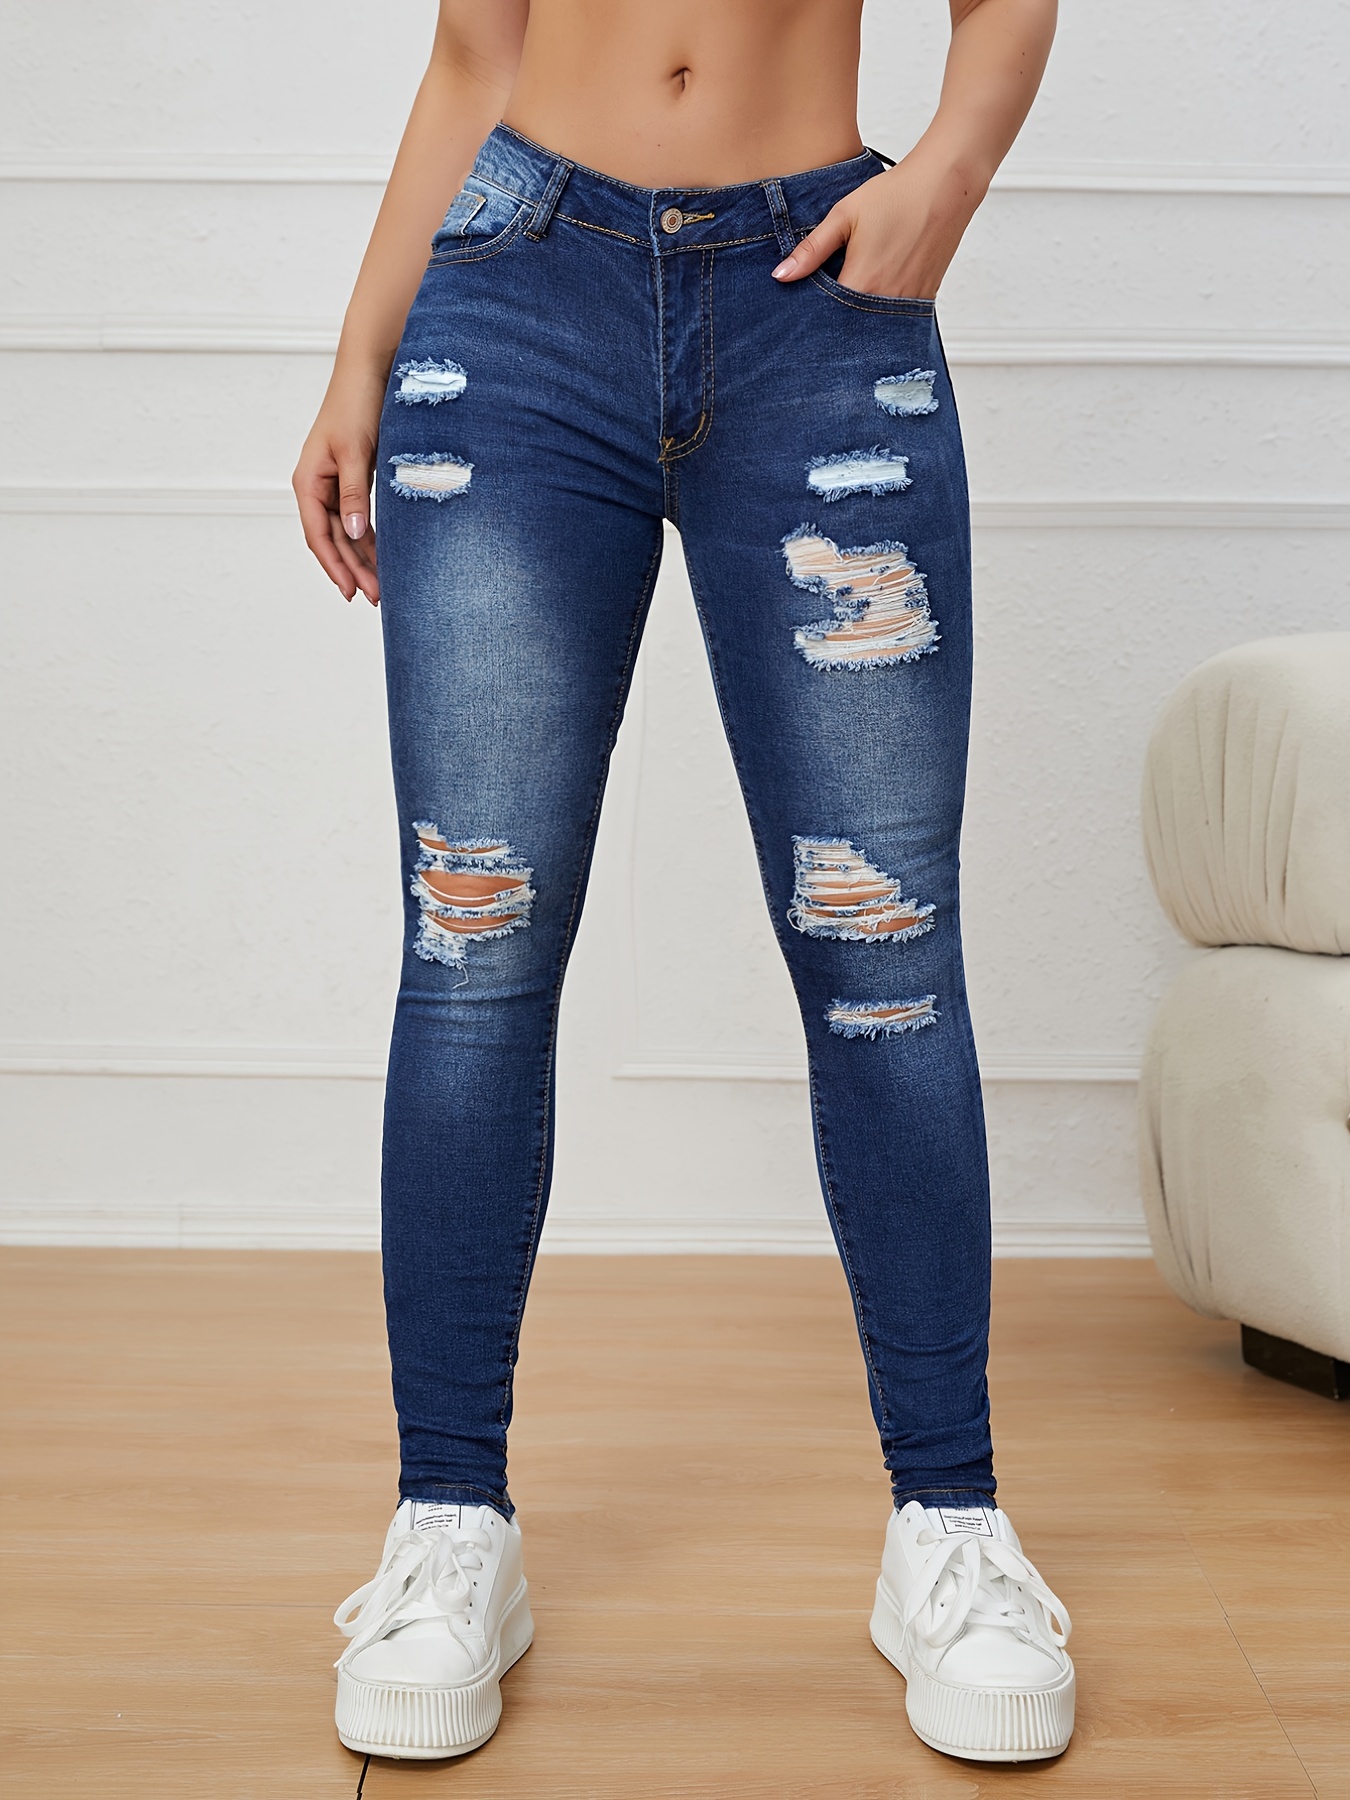 Calças jeans skinny de cintura alta, rasgadas, elásticas e justas, cintura  alta, calça jeans com botão de zíper em relevo, jeans e roupas femininas